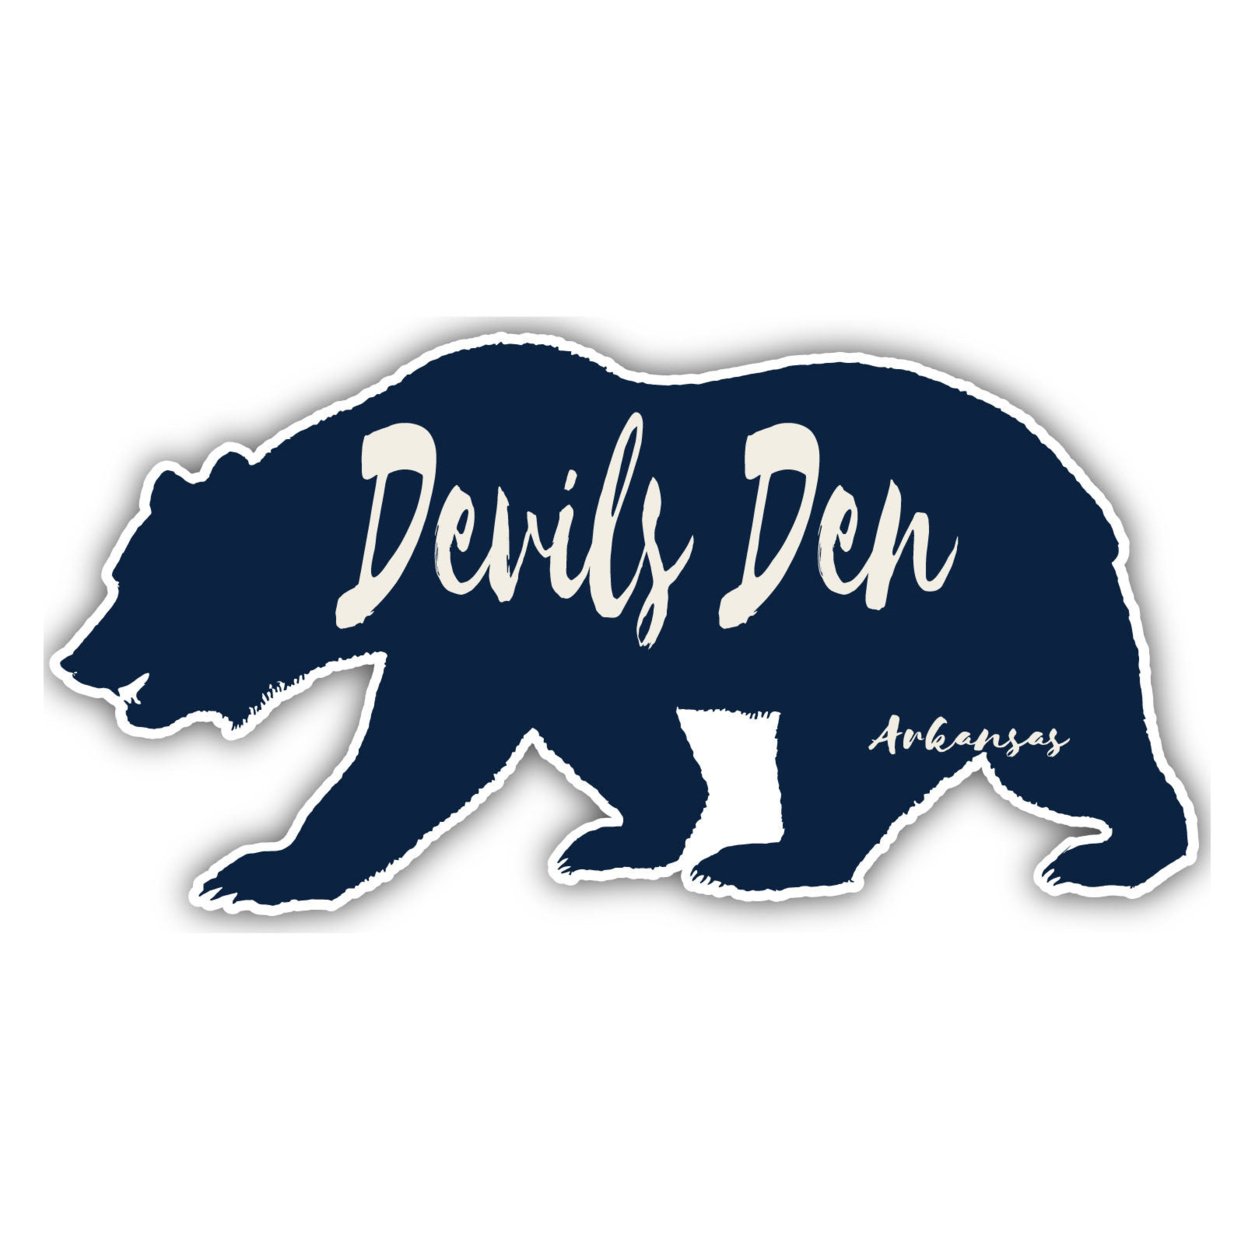 Devils Den Arkansas Souvenir Decorative Stickers (Choose Theme And Size) - 4-Pack, 2-Inch, Bear